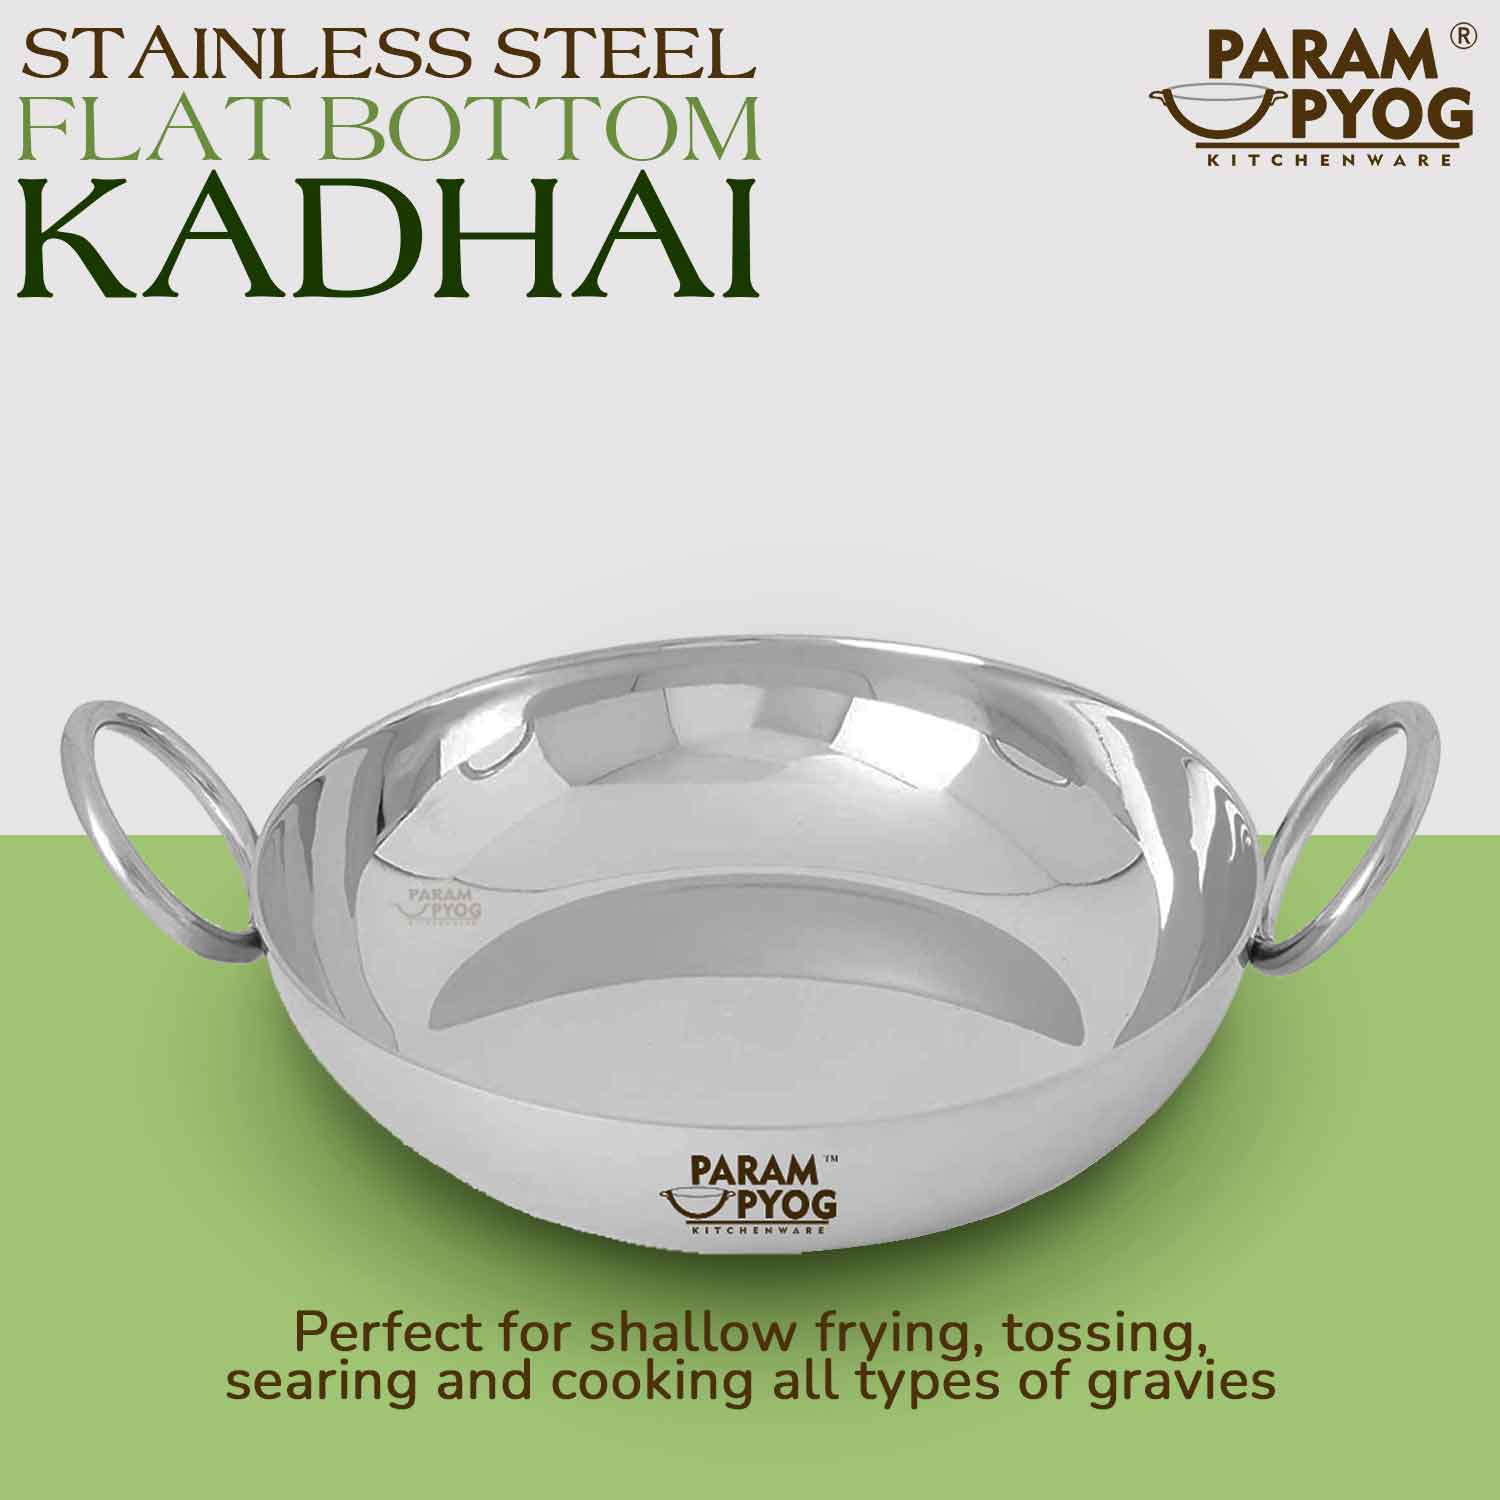 stainless-steel-heavy-kadhai-kadai-parsm-upyog